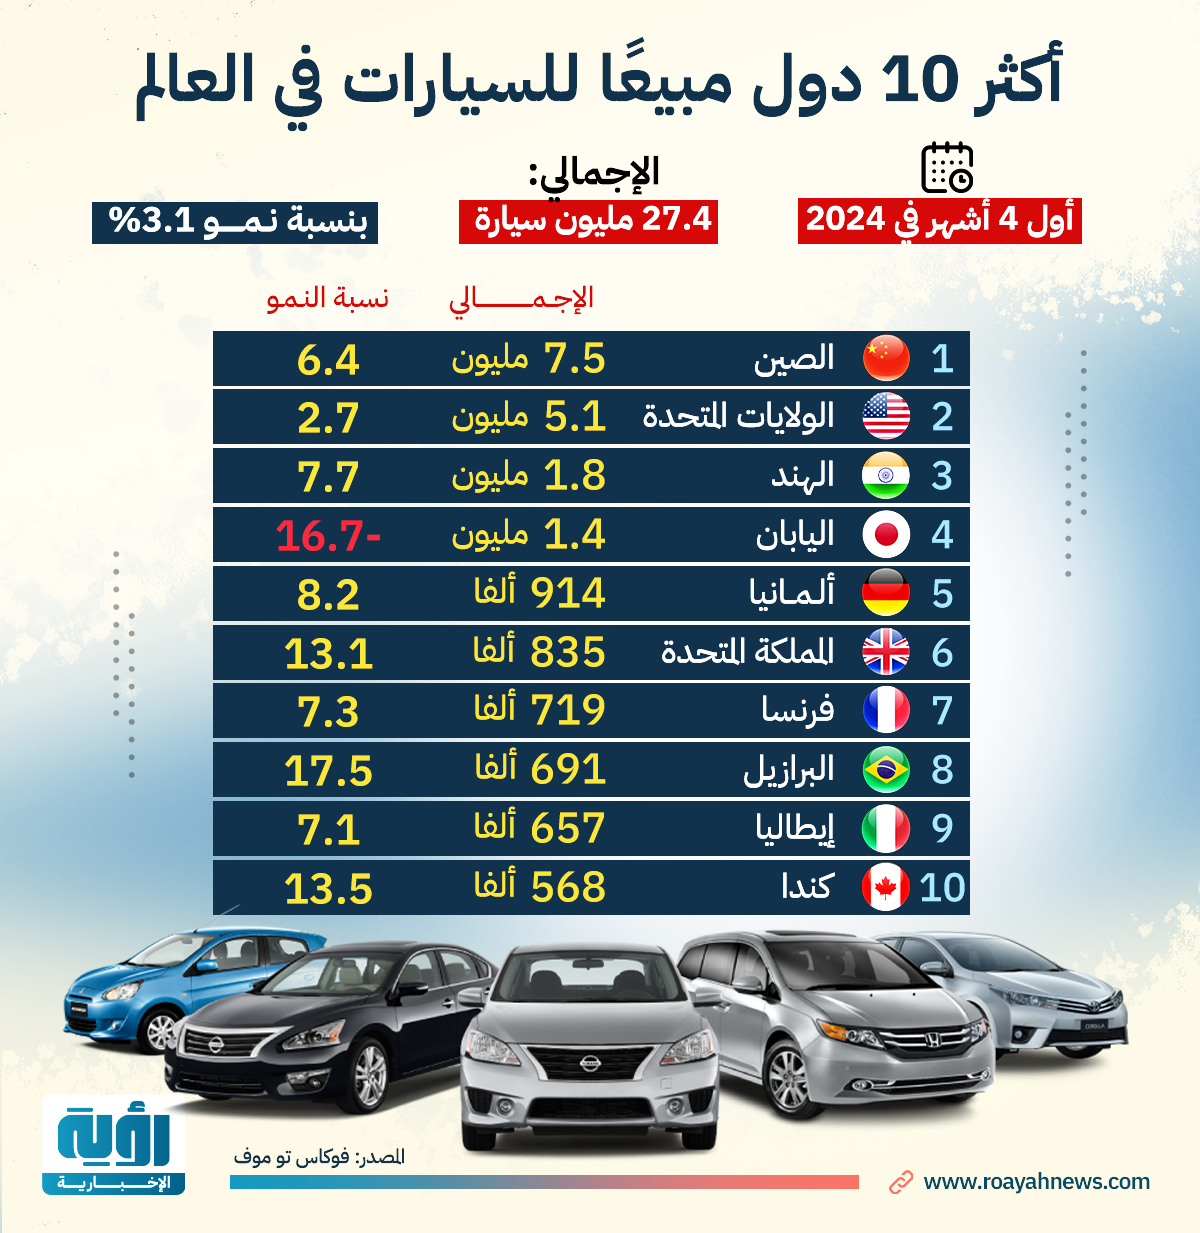 أكثر 10 دول مبيعًا للسيارات في العالم